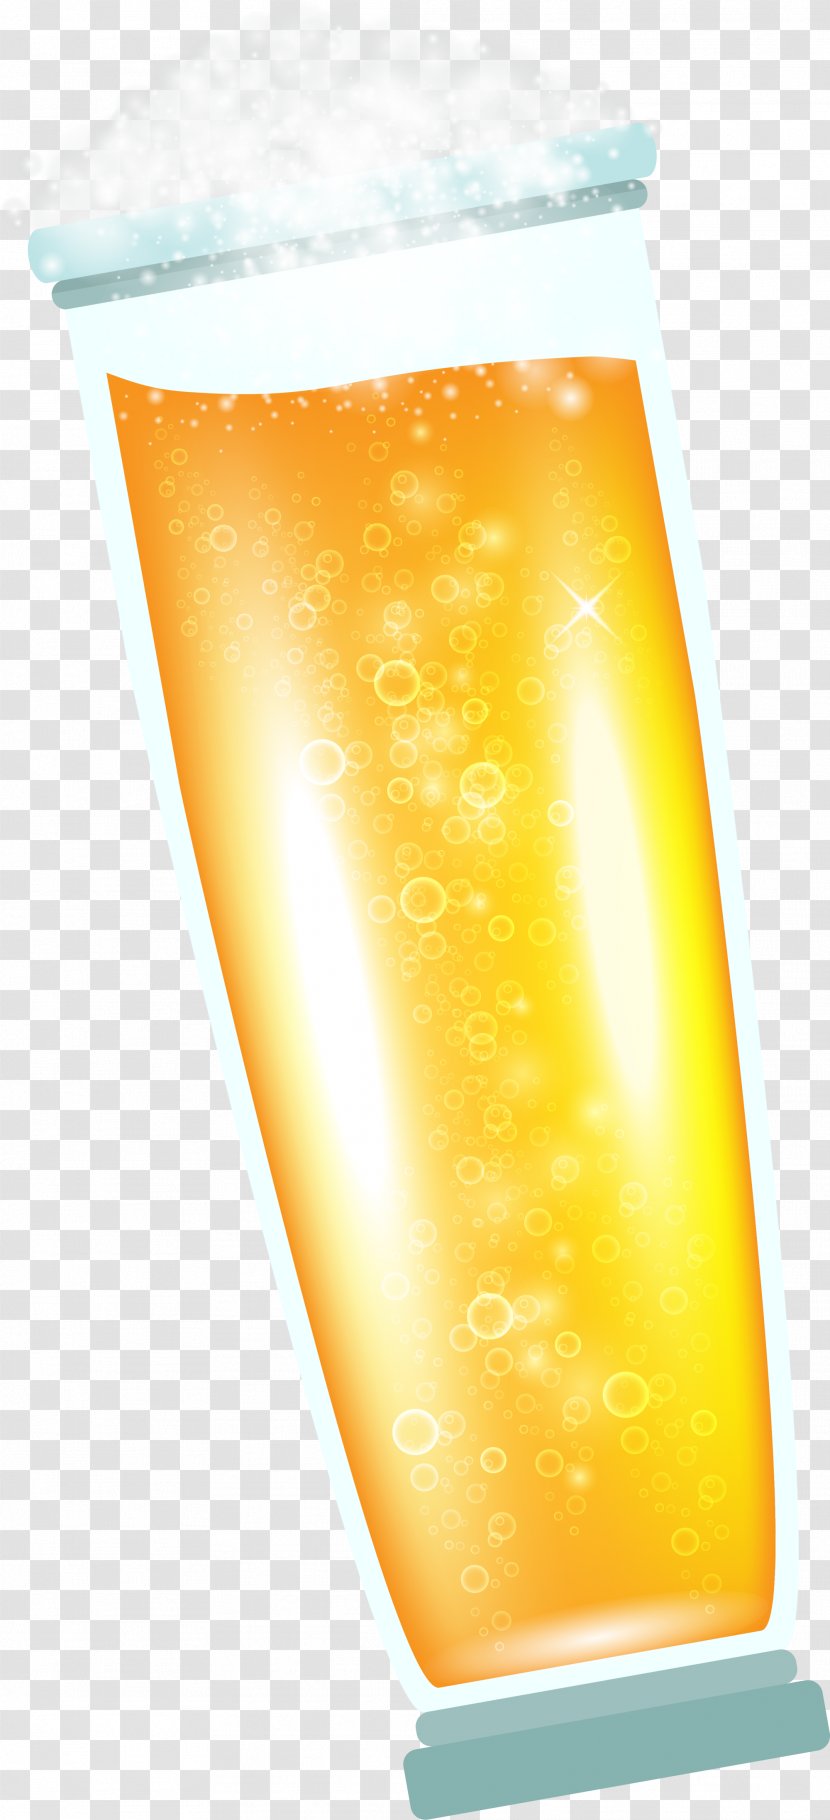 Gold Gratis - Alcoholic Beverage - Golden Delicious Beer Transparent PNG